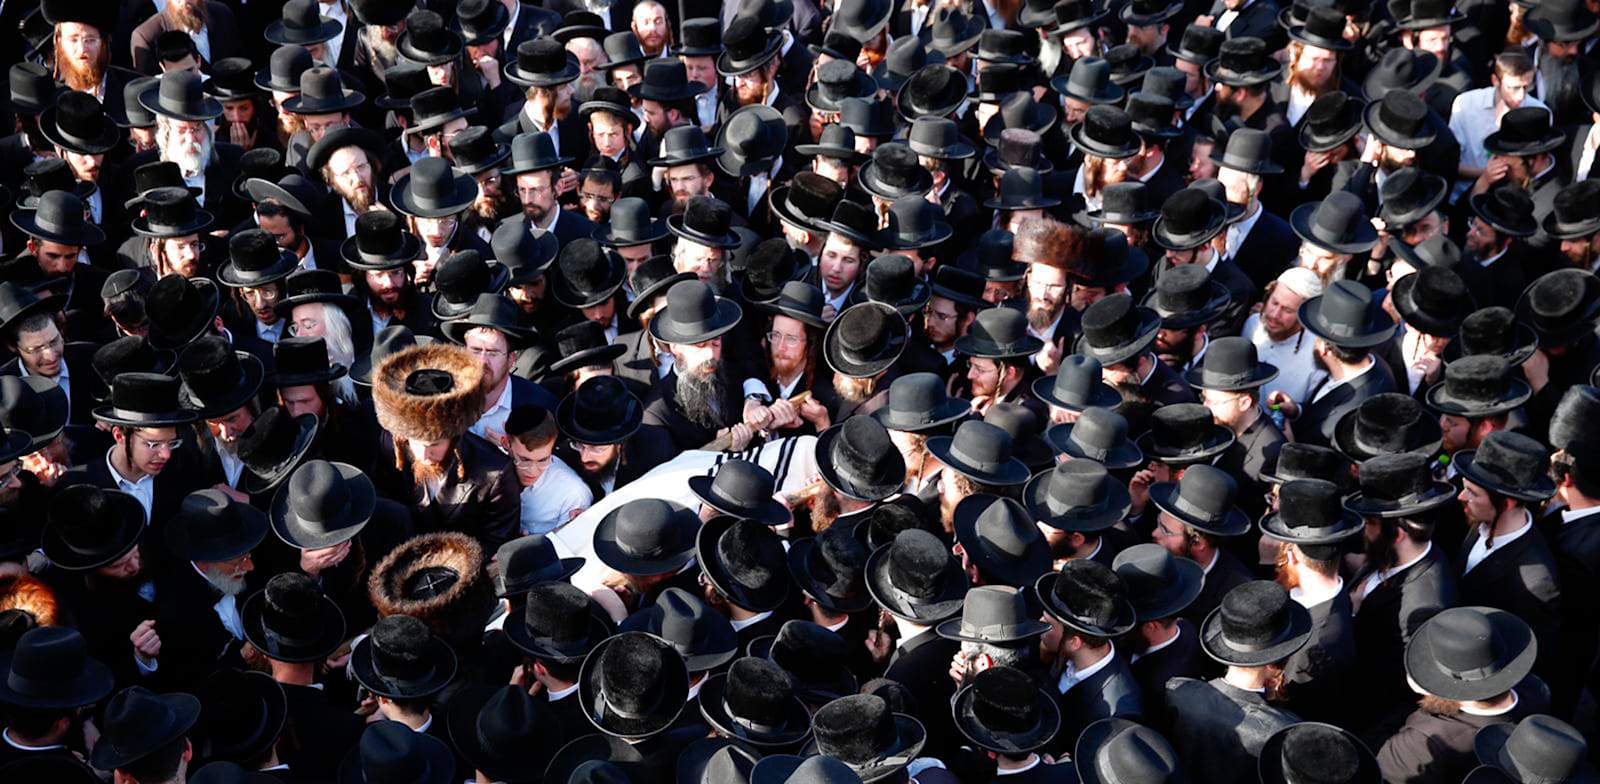 אלפים משתתפים בלוויה של הרוג באסון הר מירון / צילום: Associated Press, Ariel Schalit